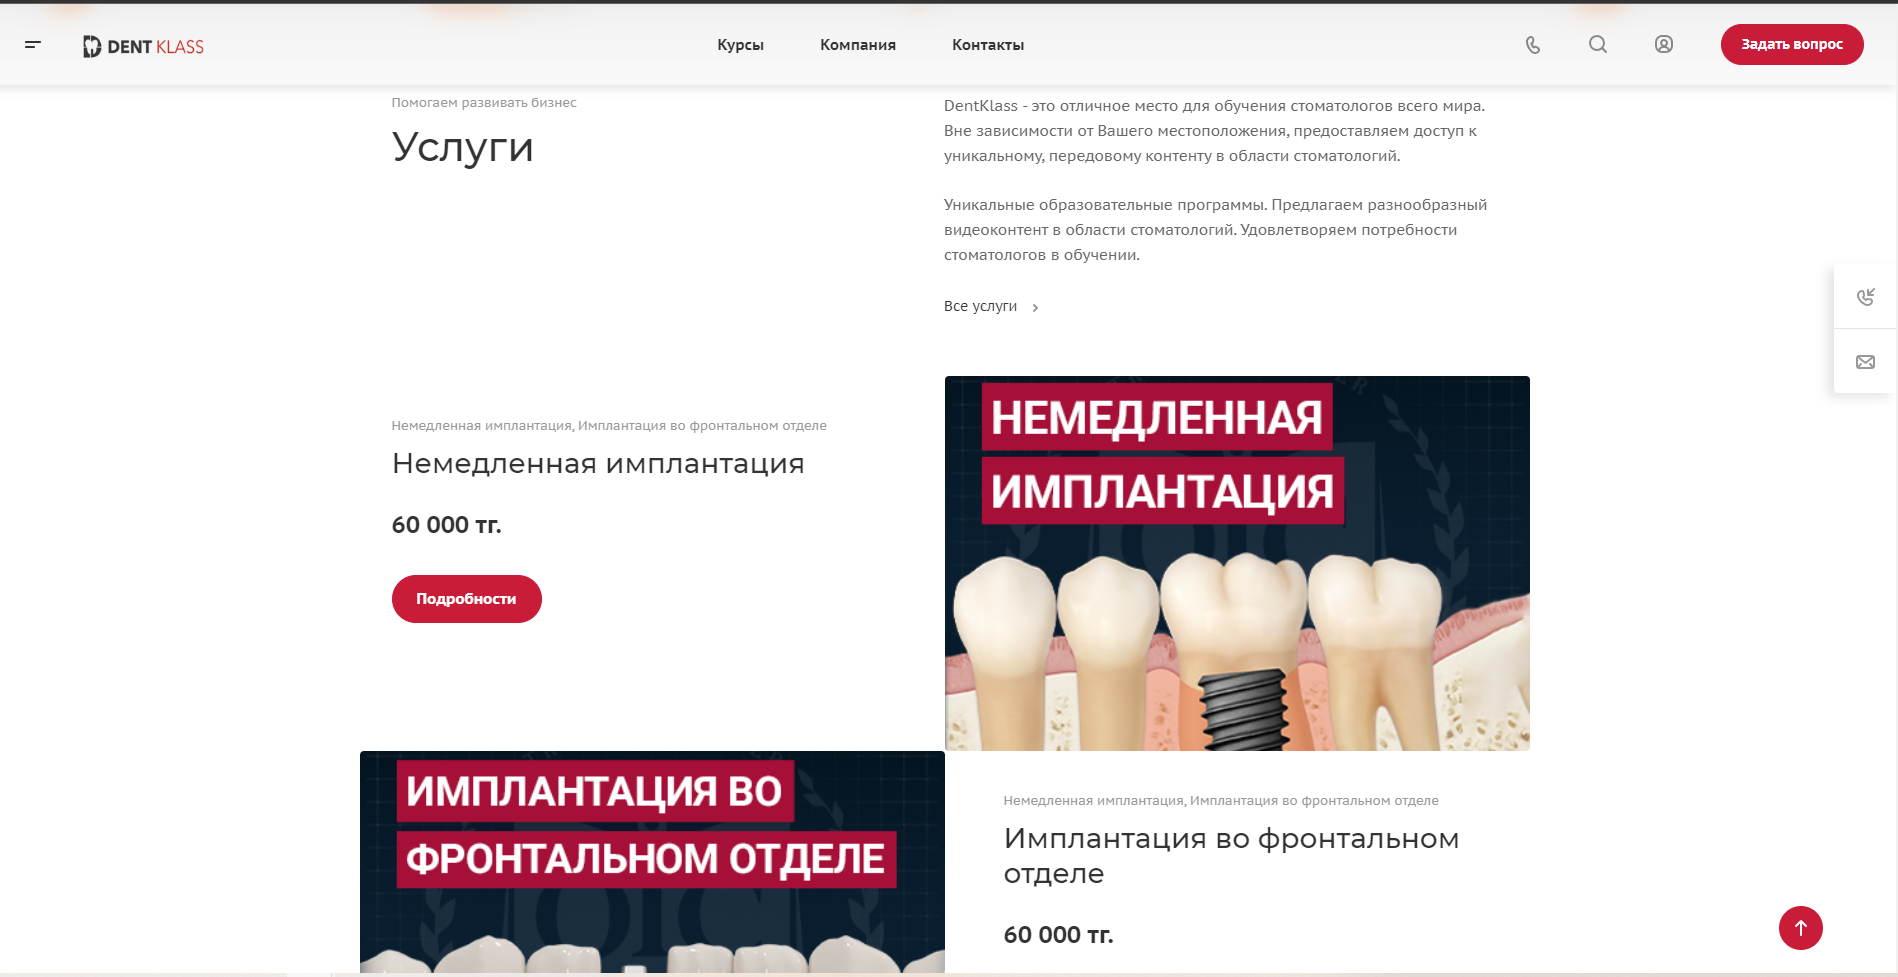 интернет-магазин обучающих уроков в сфере стоматологии ип a&young